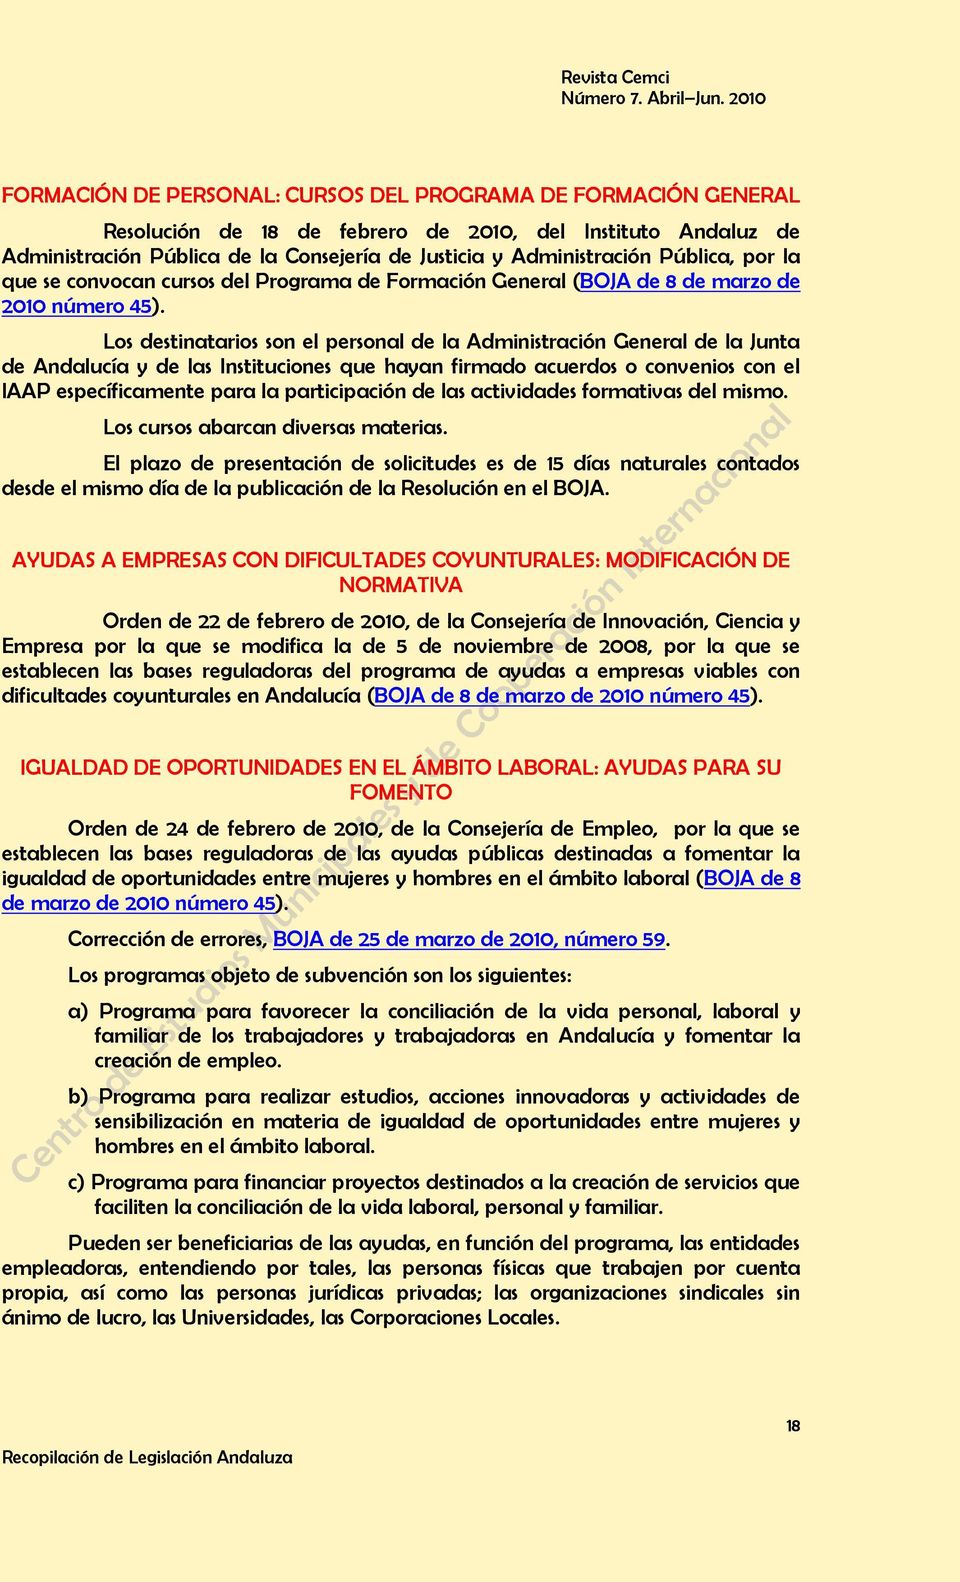 Los destinatarios son el personal de la Administración General de la Junta de Andalucía y de las Instituciones que hayan firmado acuerdos o convenios con el IAAP específicamente para la participación